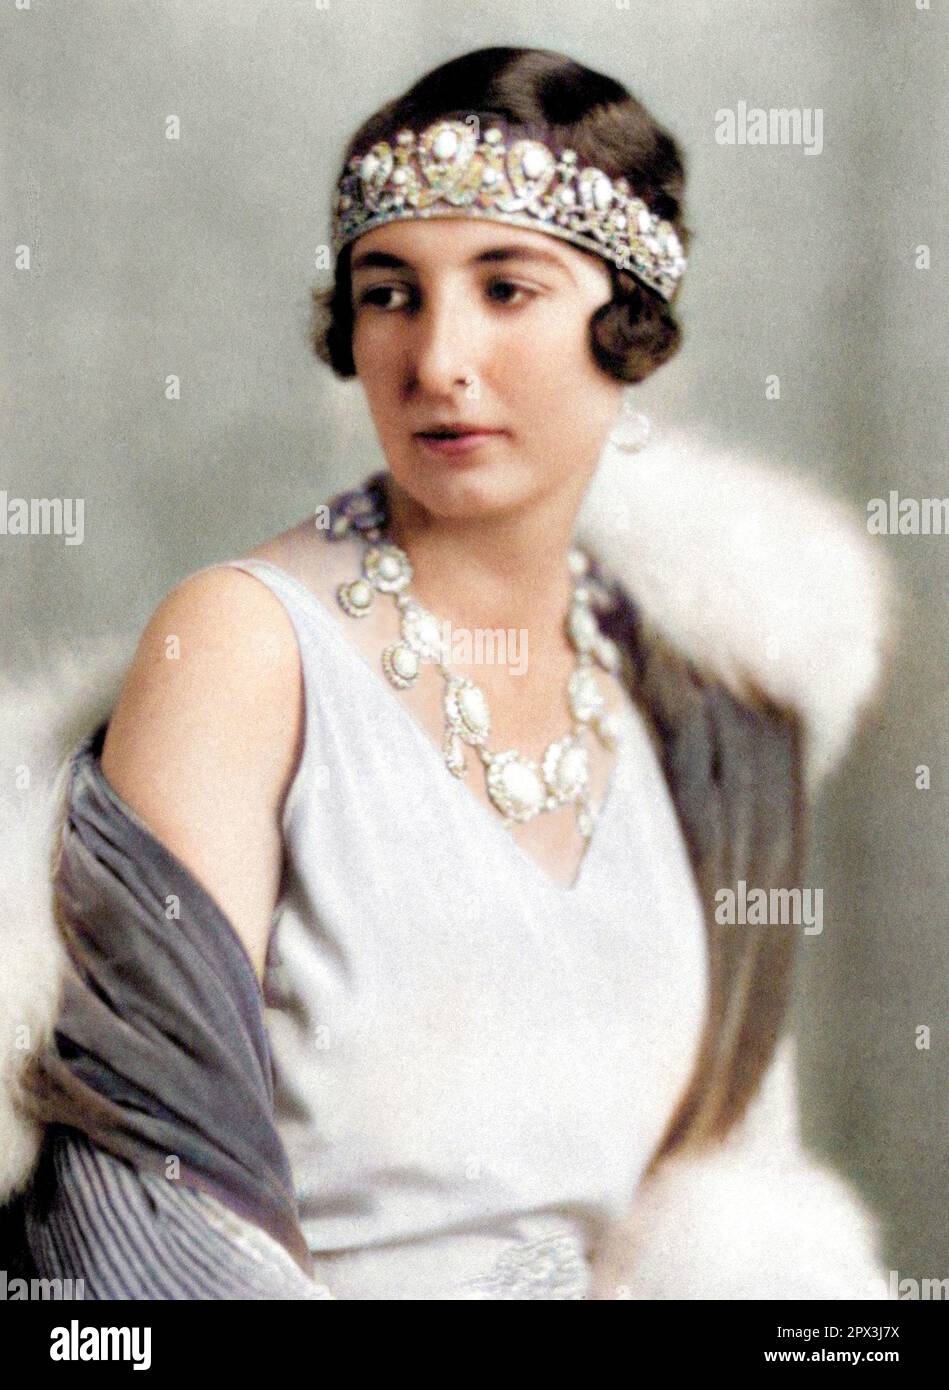 1929 ca , Roma , ITALIA : la principessa francese Francesco d'ORLEANS di GRECIA e DANIMARCA (1902 - 1953 ), figlia del duca Jean d'Orléans duc de Guise (1874 - 1940 ) e della principessa Isabelle d'Orléans (1878 - 1961 ). Sposato, a Palermo (Italia), il 11 febbraio 1929 con il Principe Cristoforo di Grecia e Danimarca (1888 - 1940), figlio di re Giorgio i di Grecia e della regina Olga Constantinovna di Russia (1851 - 1926). La coppia ebbe un solo figlio : il Principe Michele di Grecia e Danimarca ( nato nel 1939 , sposato nel 1965 con Marina Karella ). Foto di EVA BARRETT ( 1879 - 1950 ). COLORATO DIGITALMENTE . - Foto Stock